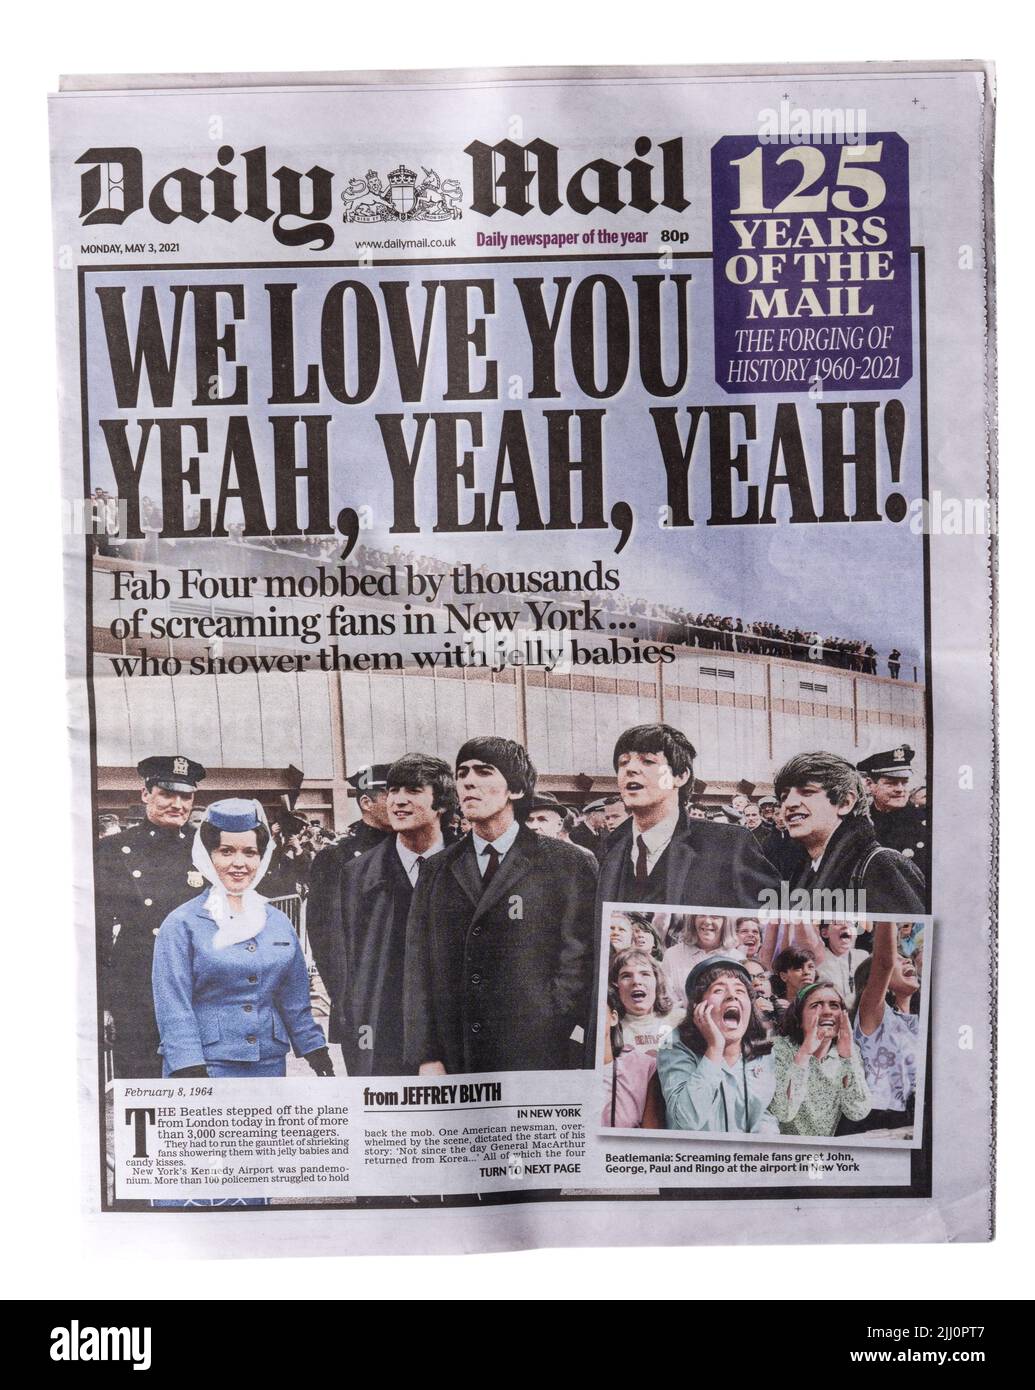 Une reproduction du titre du Daily Mail de 8 février 1964 sur les Beatles arrivant à New York Banque D'Images